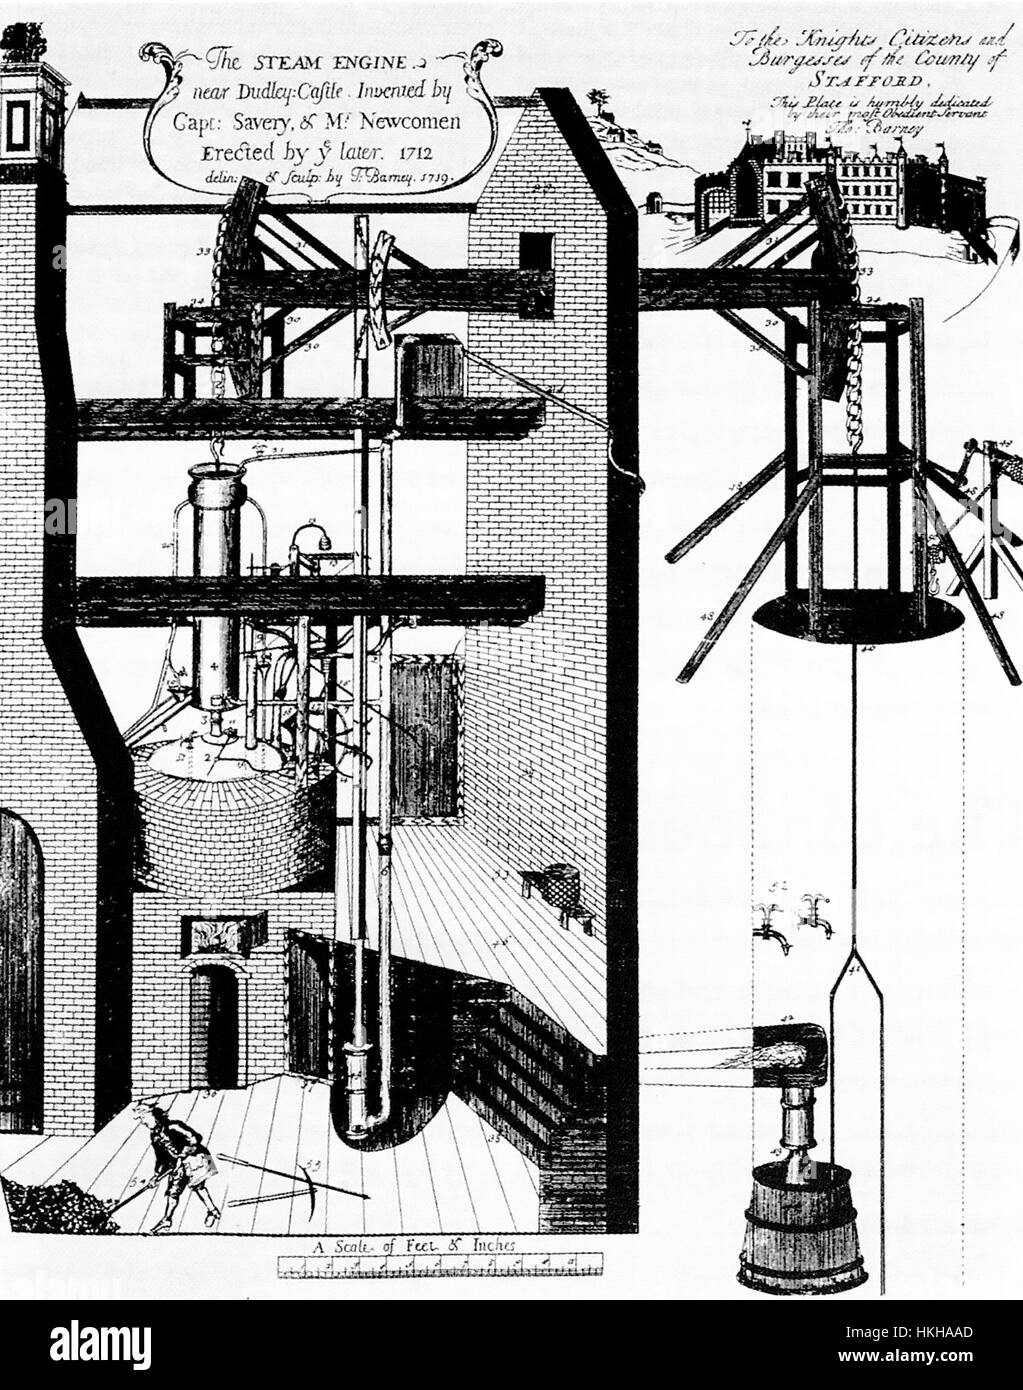 THOMAS NEWCOMEN (1664-1729) inventeur anglais. Avec Thomas Savery, il a conçu un moteur à vapeur illustré ici installé au château de Dudley, West Midlands, en 1712 Banque D'Images